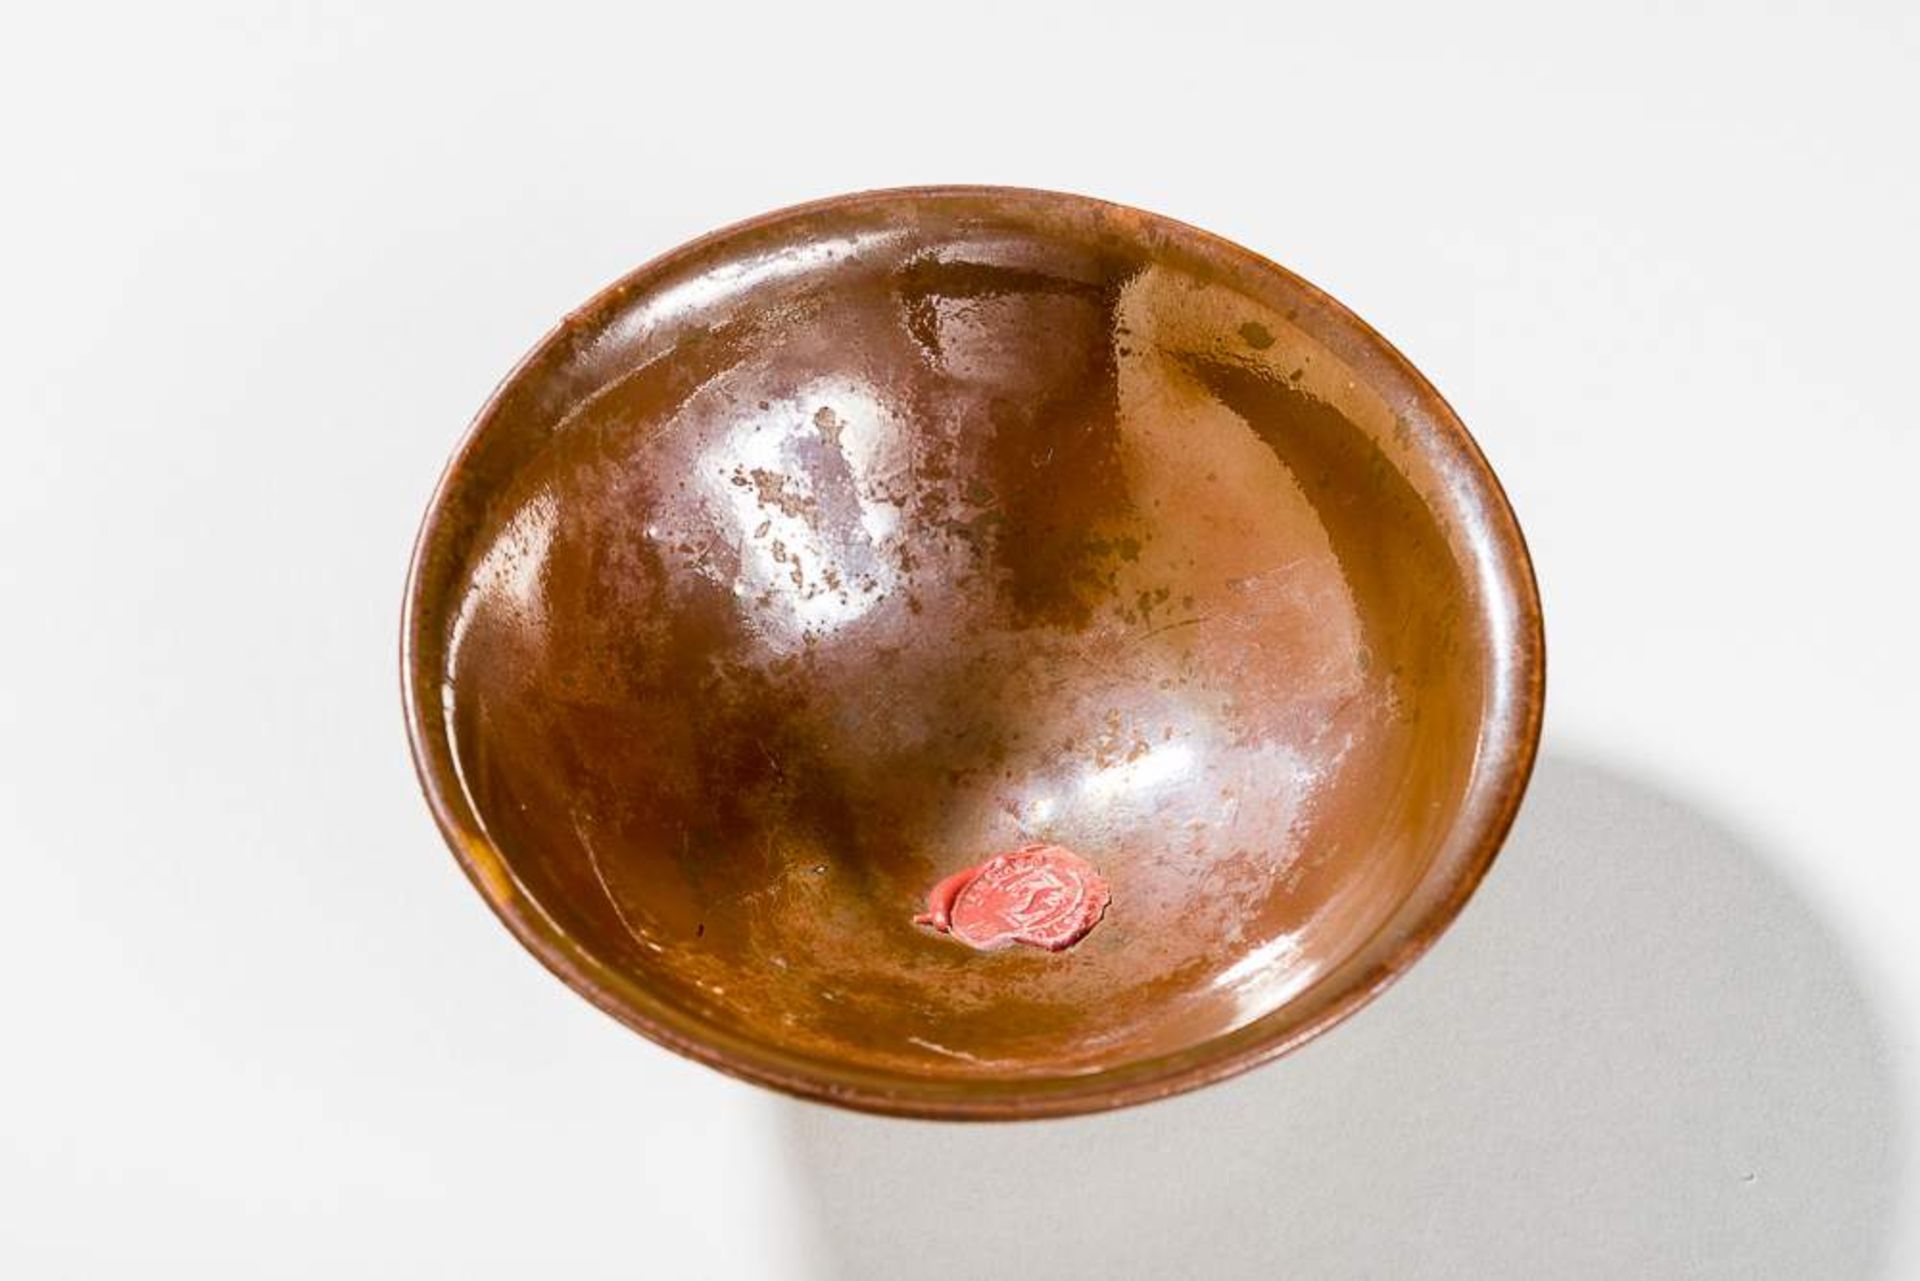 SCHALE MIT ROSTBRAUNER GLASURGlasierte Keramik. China, Nördl. Song bis Jin, 11. bis 12. Jh.Eine - Bild 4 aus 4